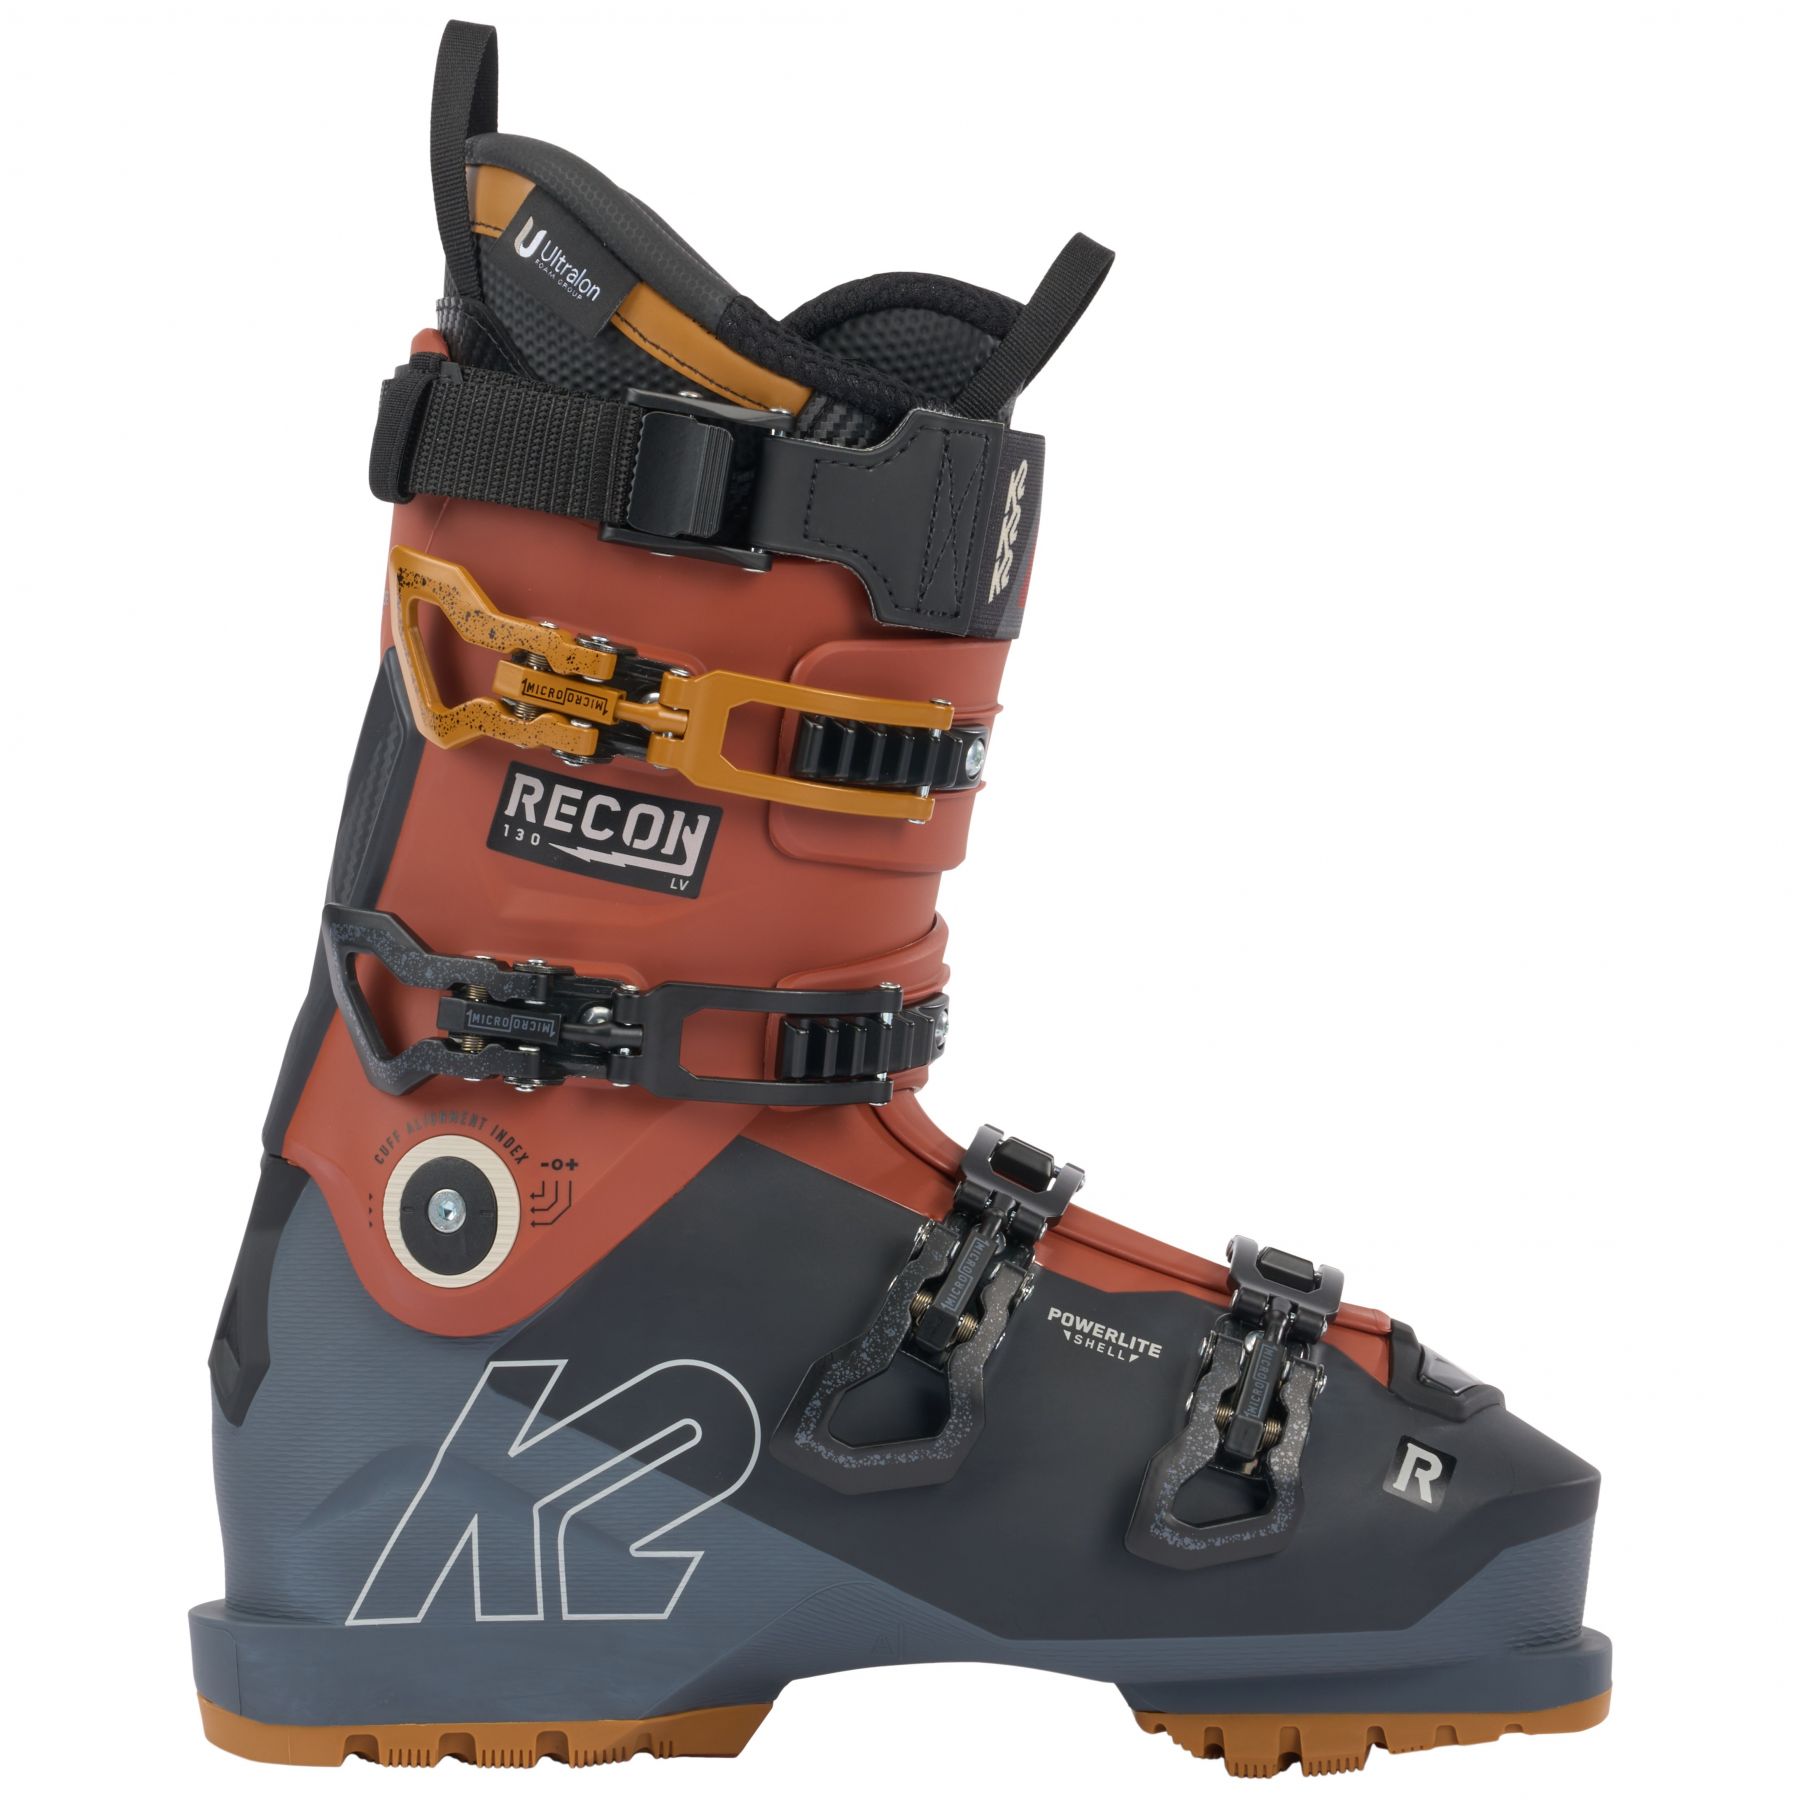 Billede af K2 Recon 130 LV, skistøvler, herre, sort/rød hos Skisport.dk